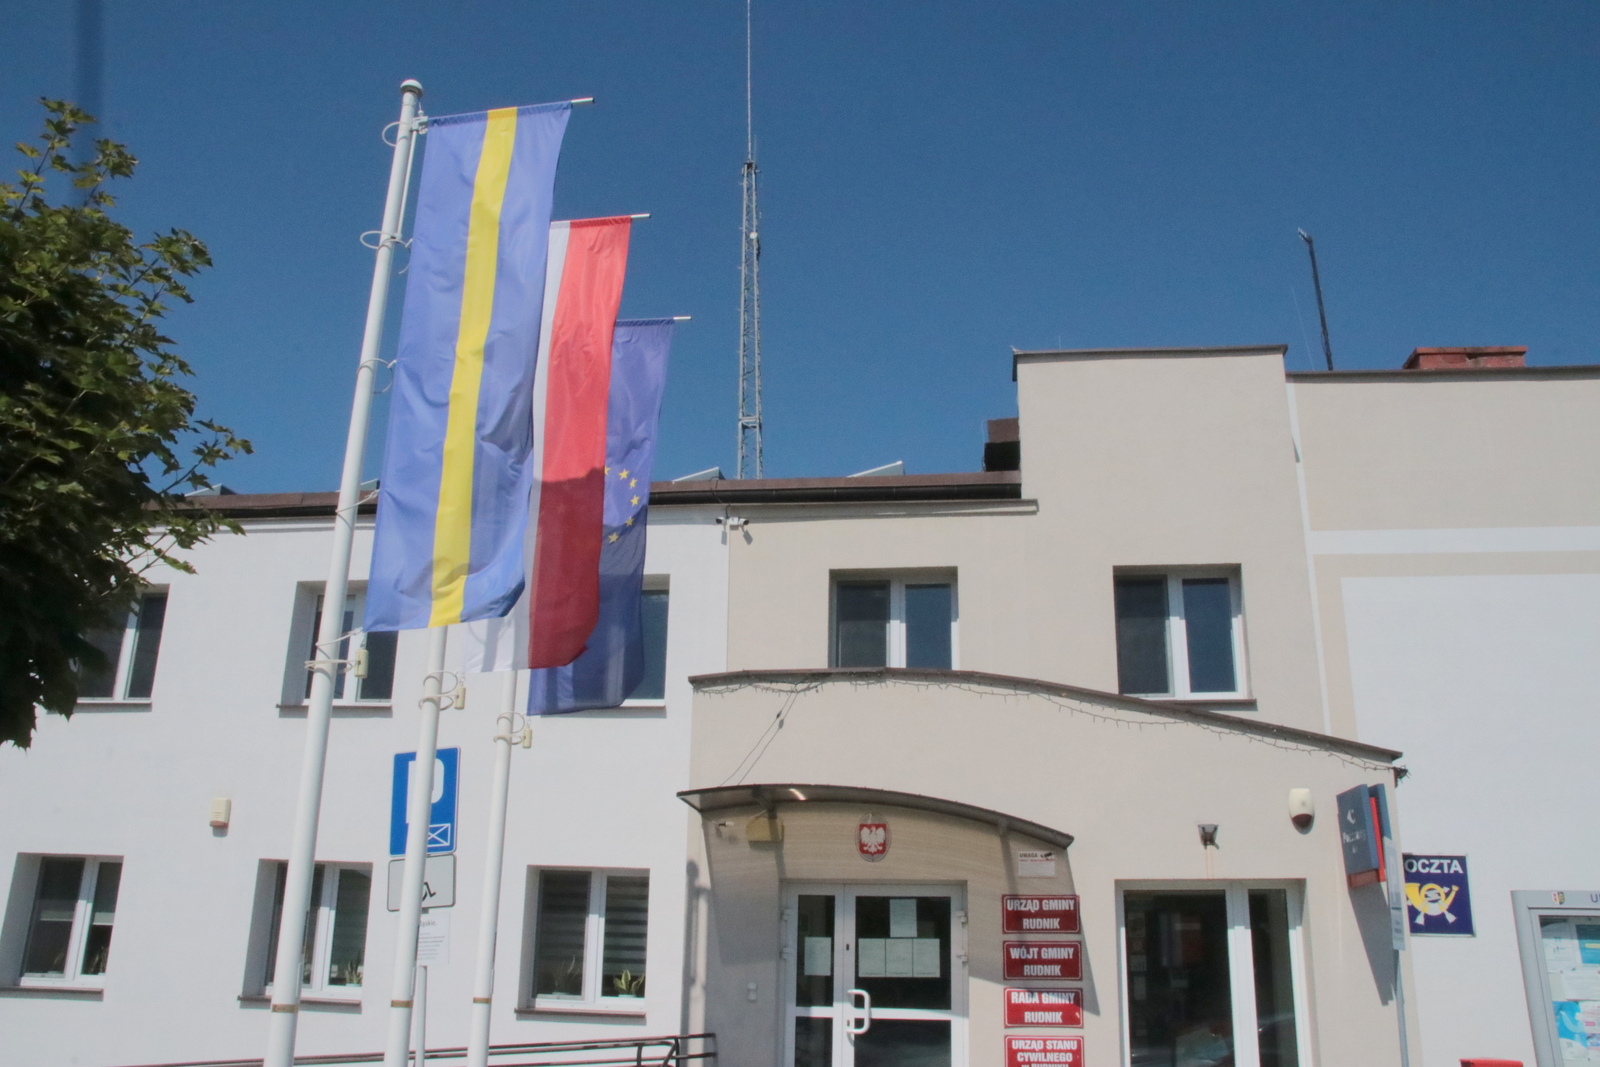 Przed Urzędem Gminy Rudnik wiszą trzy flagi: Polski, Unii Europejskiej i województwa śląskiego, a nie Górnego Śląska, którą wspomina się właśnie 15 lipca